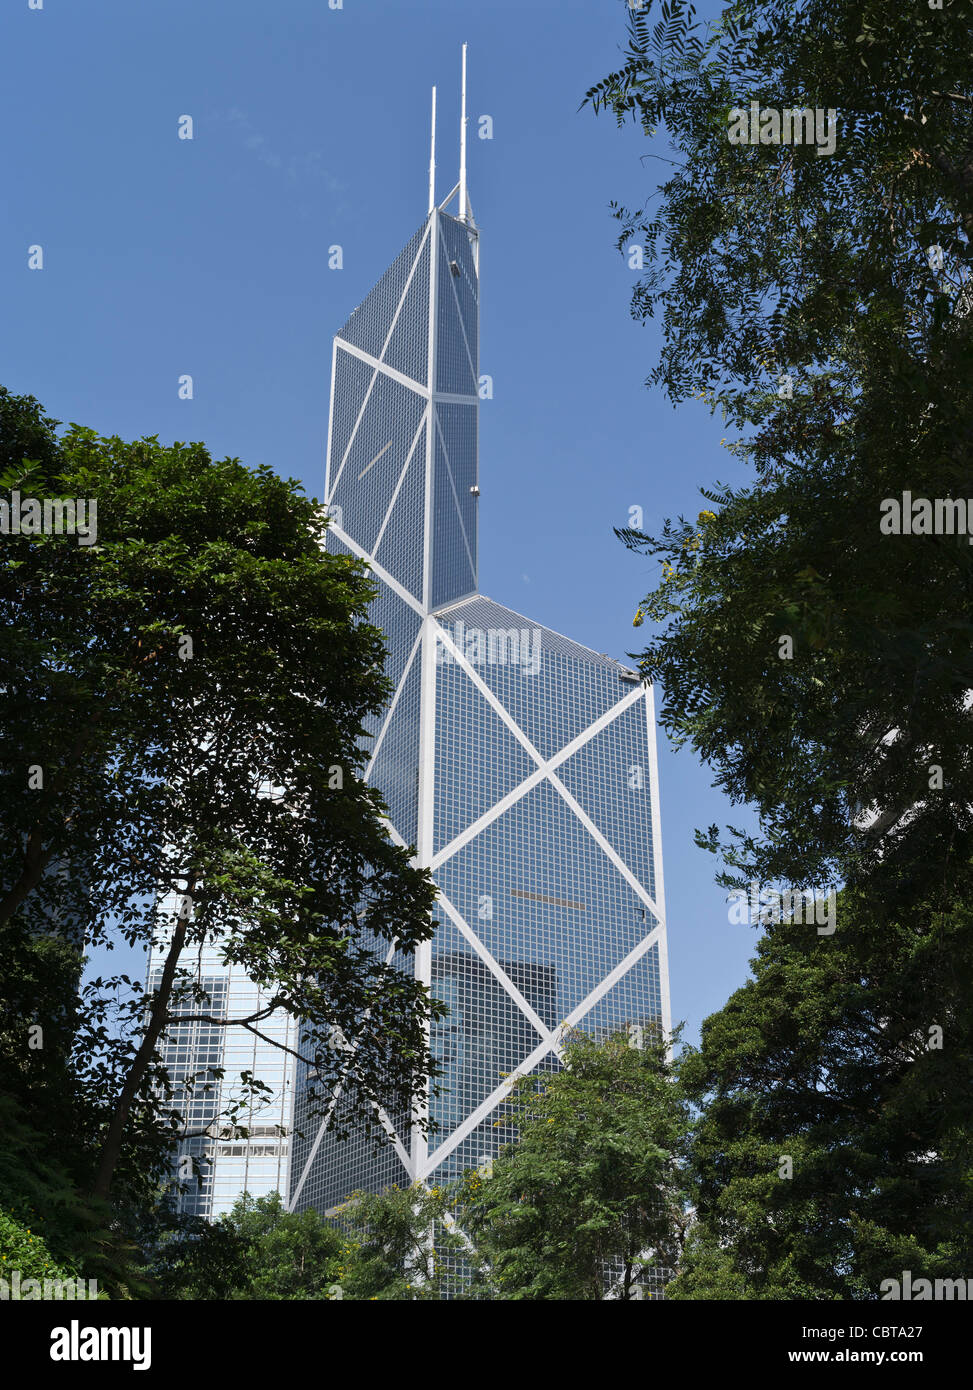 Dh Banque de Chine CENTRE DE HONG KONG gratte-ciel tour de verre de bâtiment de bureaux d'architecture moderne Banque D'Images